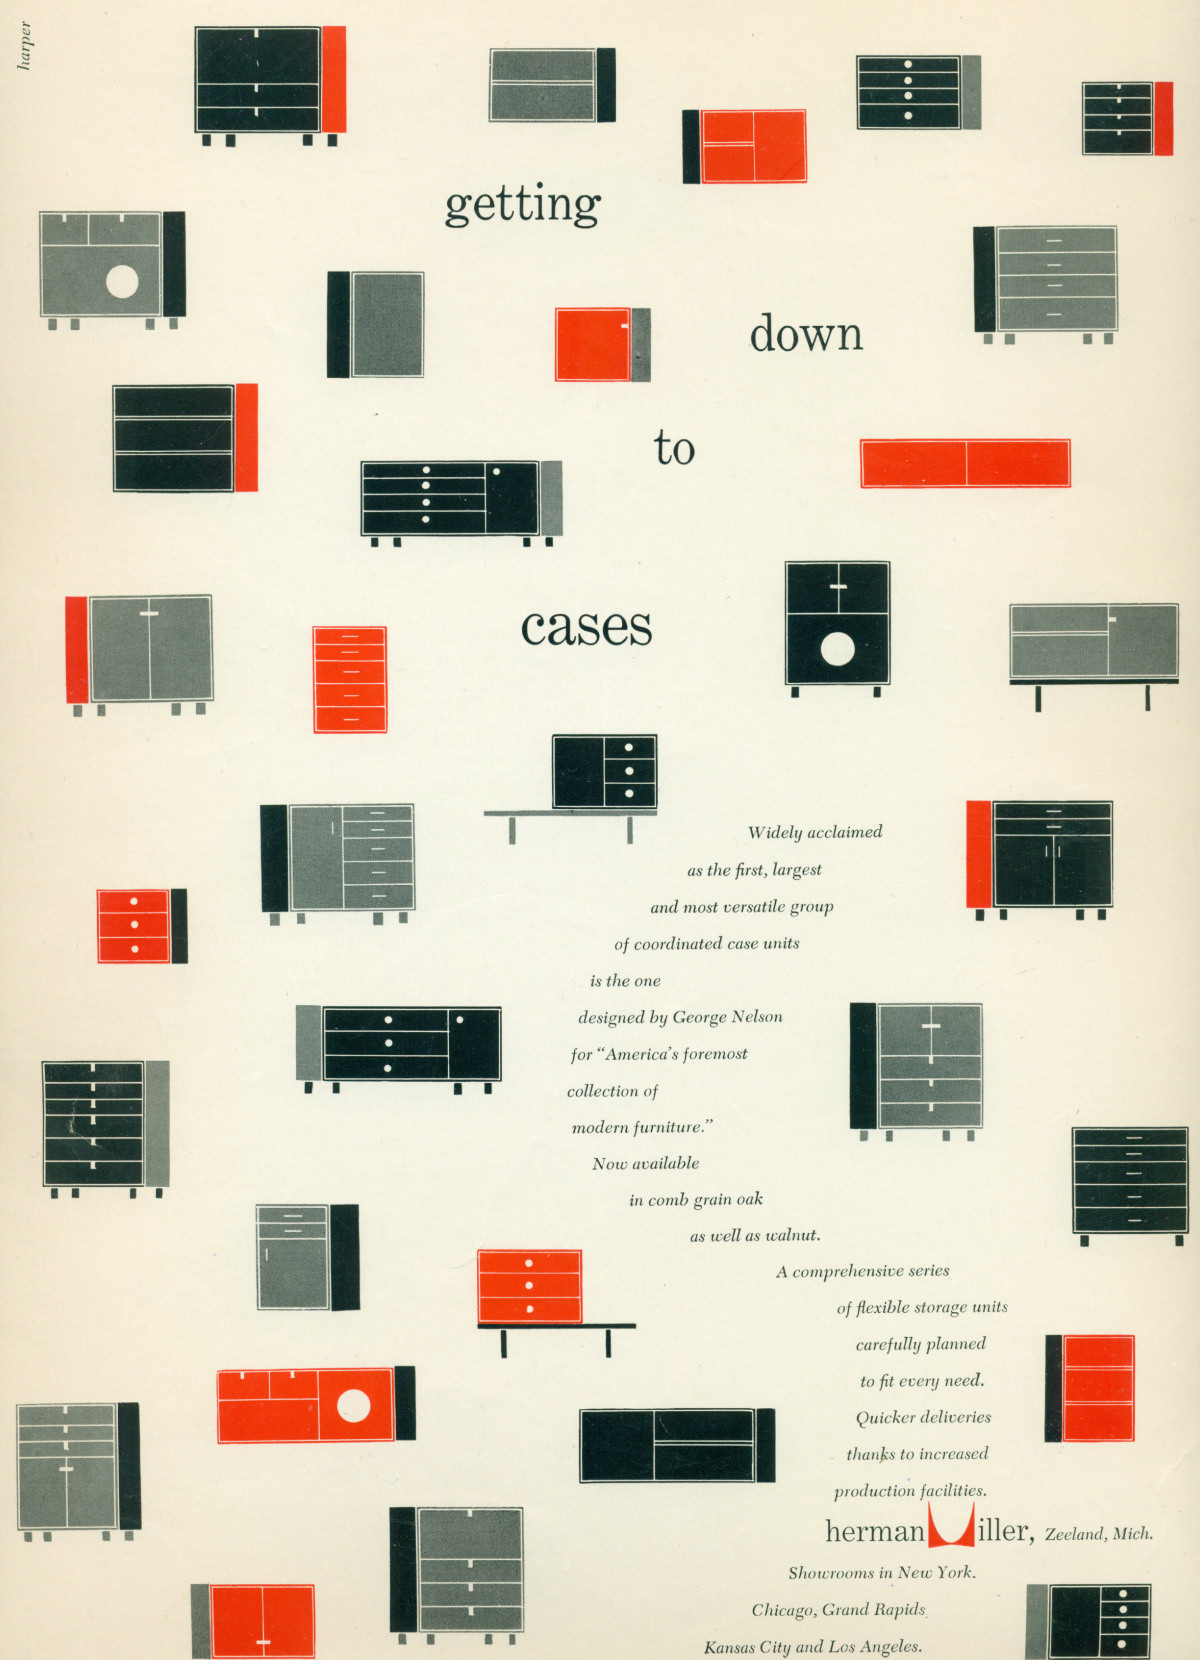 Nelson基本橱柜系列的不同组合渲染成红色、黑色和灰色的图案，周围是蜿蜒穿插在整幅广告中的促销文字。